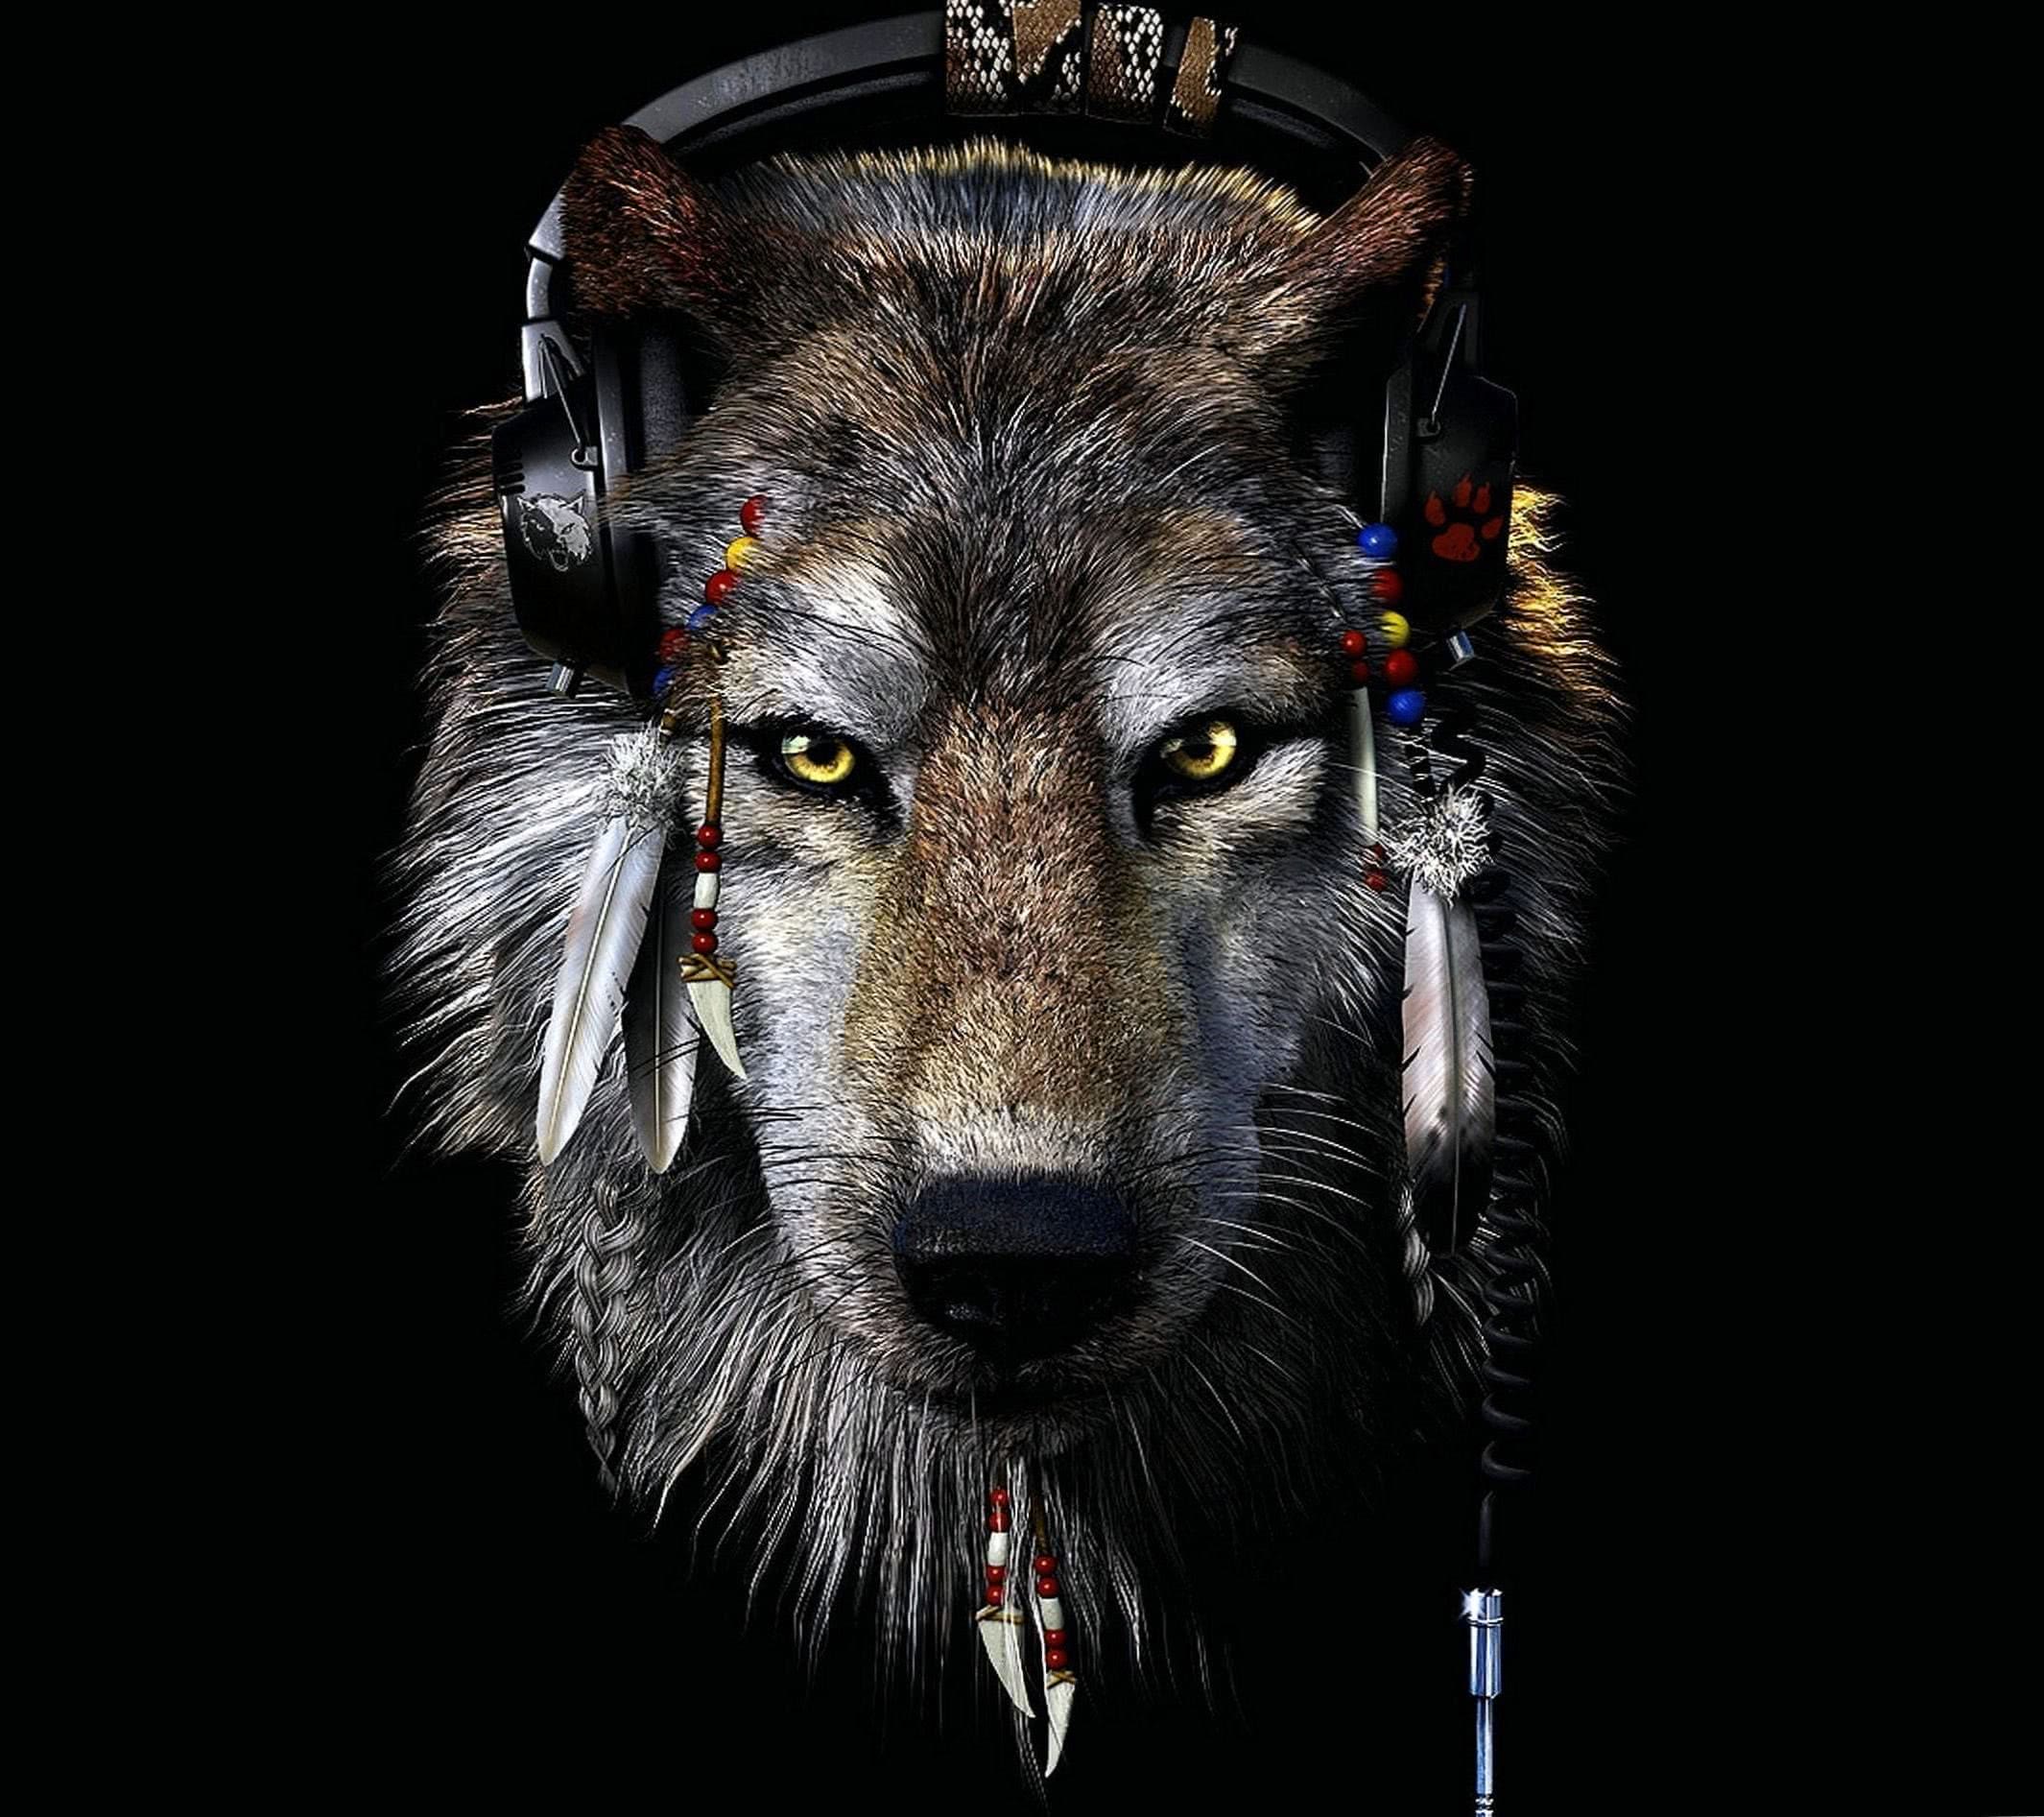 wolf dark 1920×1080 wallpaper background image 5